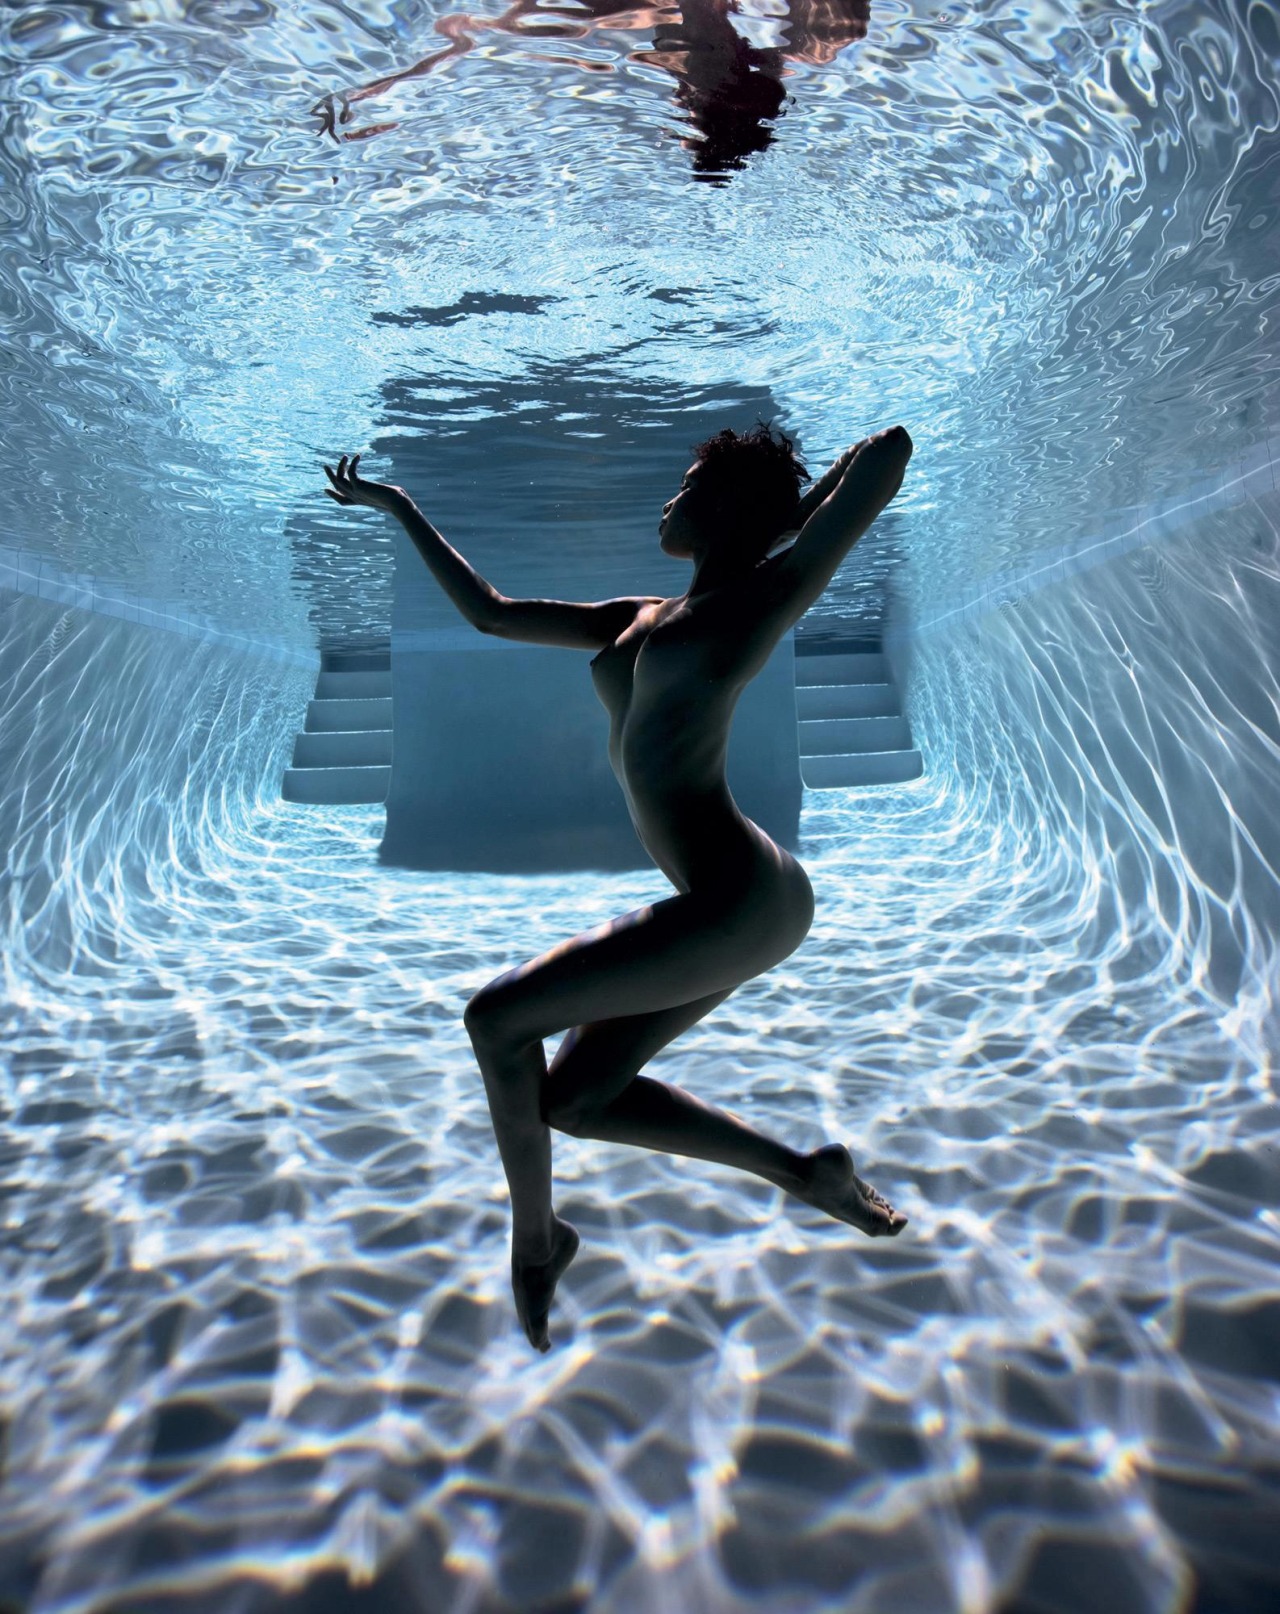 Amazing underwater